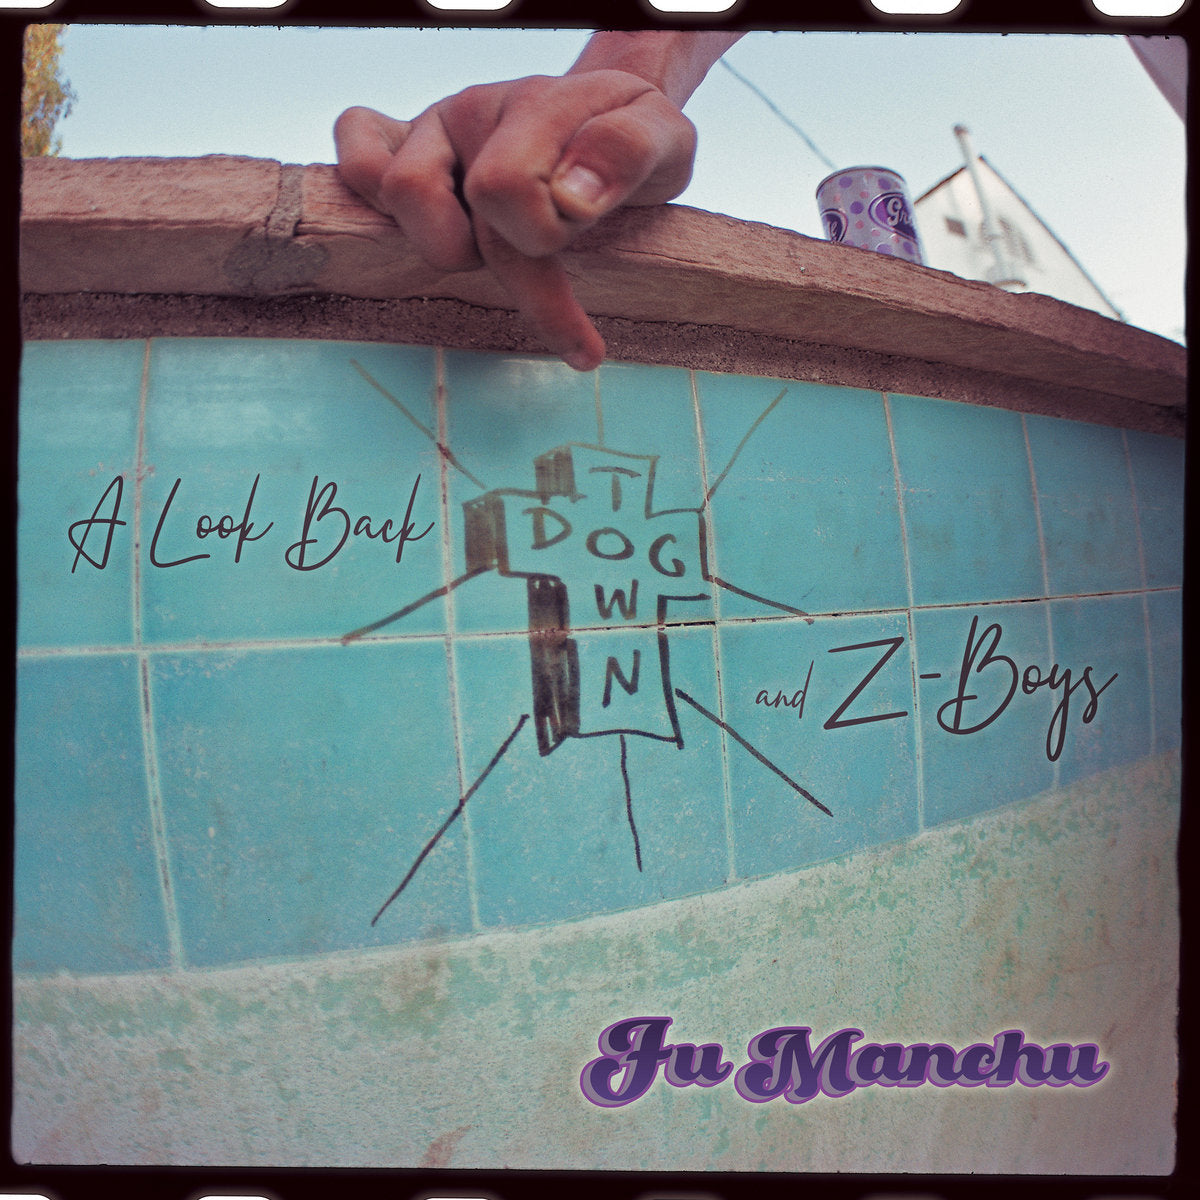 FU MANCHU - A LOOK BACK: DOGTOWN & Z-BOYS Vinyl 2xLP